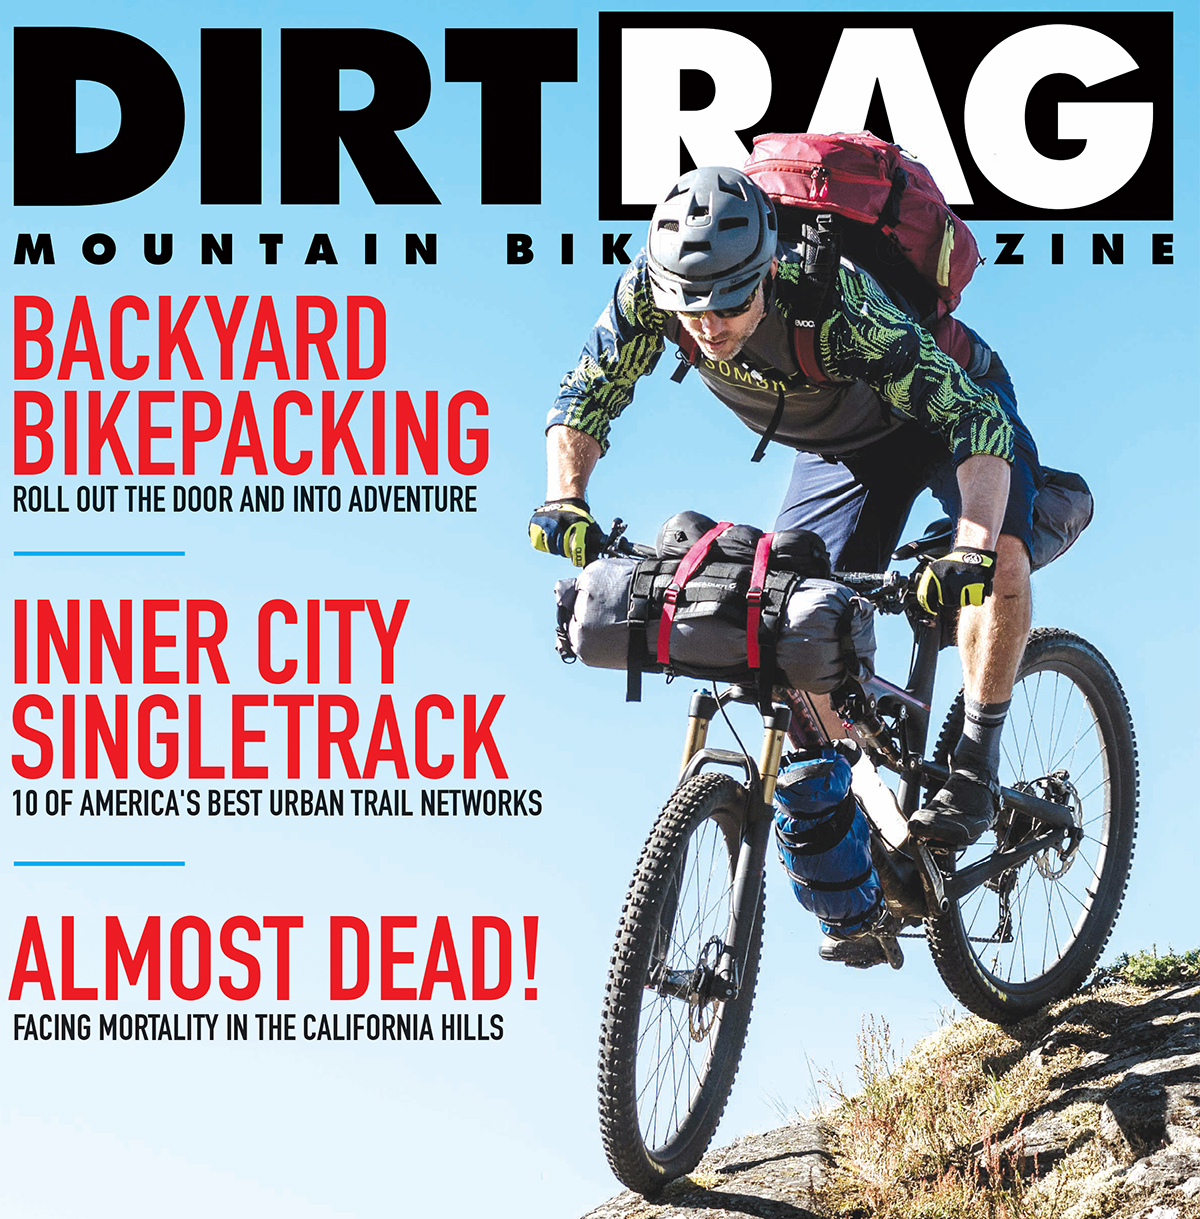 Dirt Rag 198 is here!